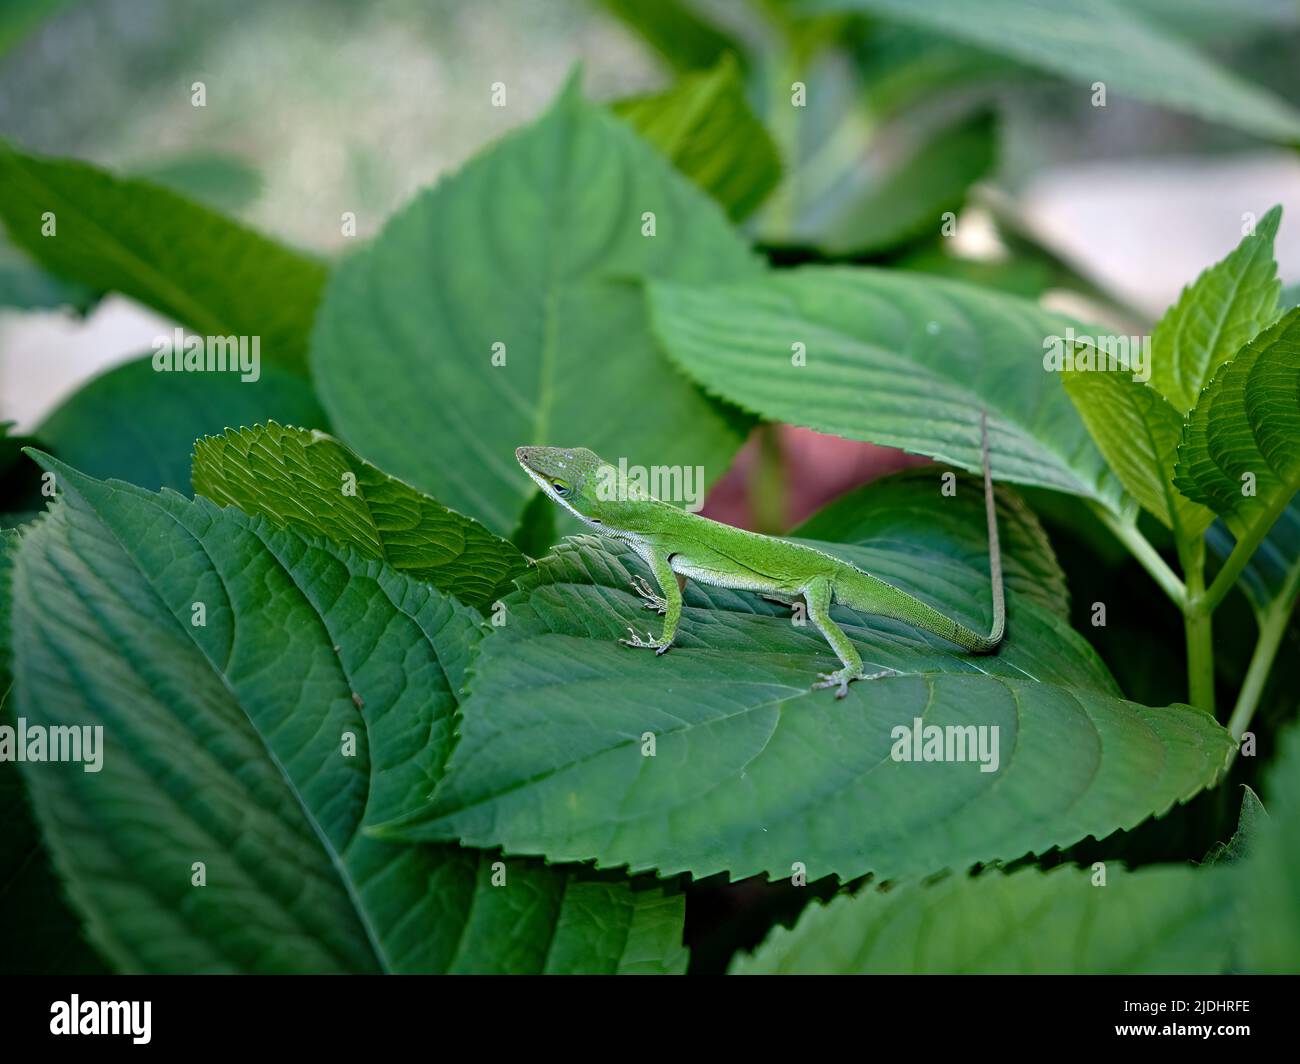 Anolis carolinensis oder grüner anolis ist auch als grüne Baumeidechse bekannt, die in einem Garten in Alabama, USA, auf grünen Blättern ruht. Stockfoto